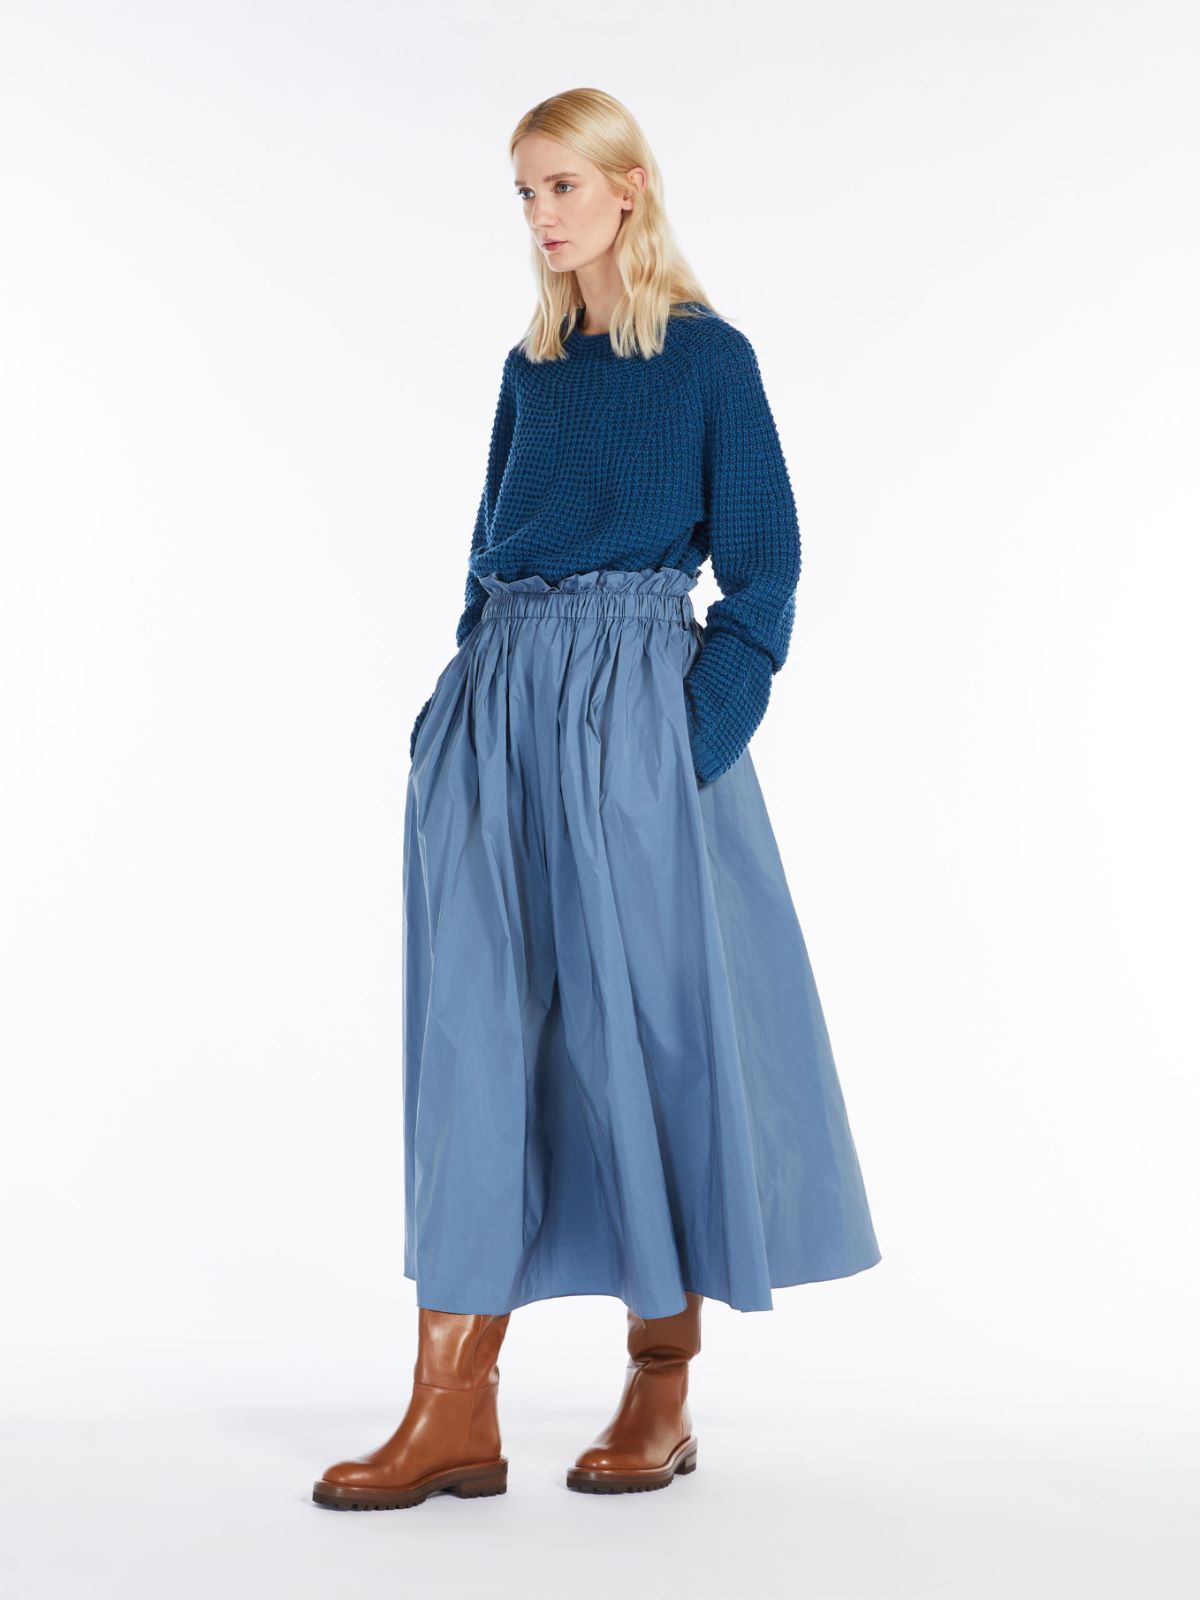 Cotton skirt - LIGHT BLUE - Weekend Max Mara